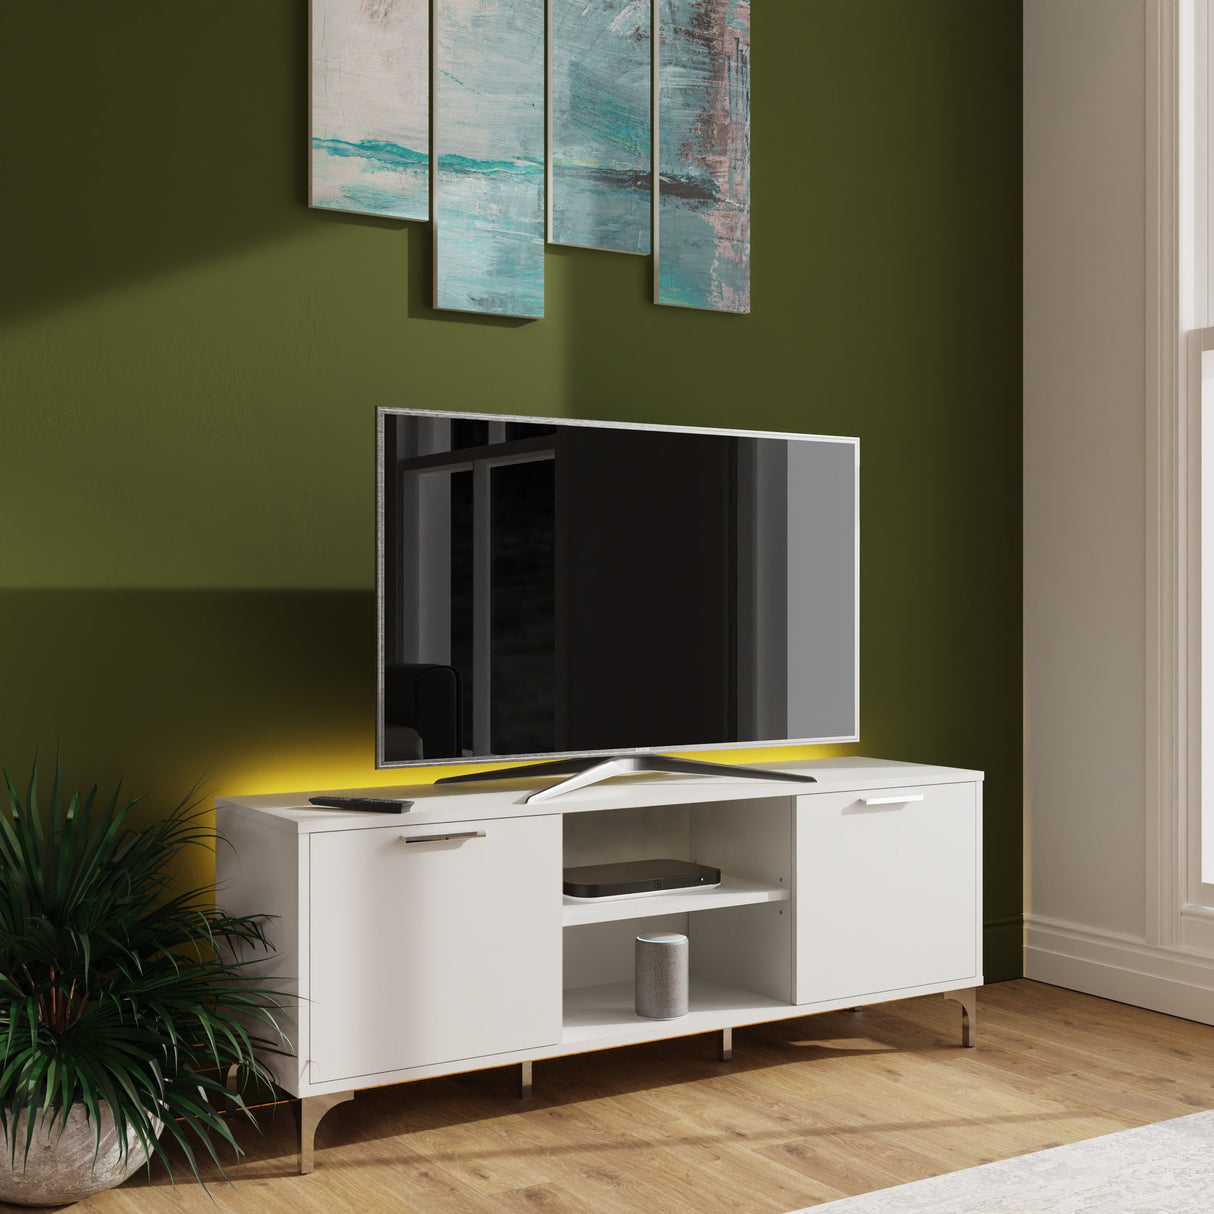 Frank Olsen Ouverte White TV Cabinet with Mood Lighting